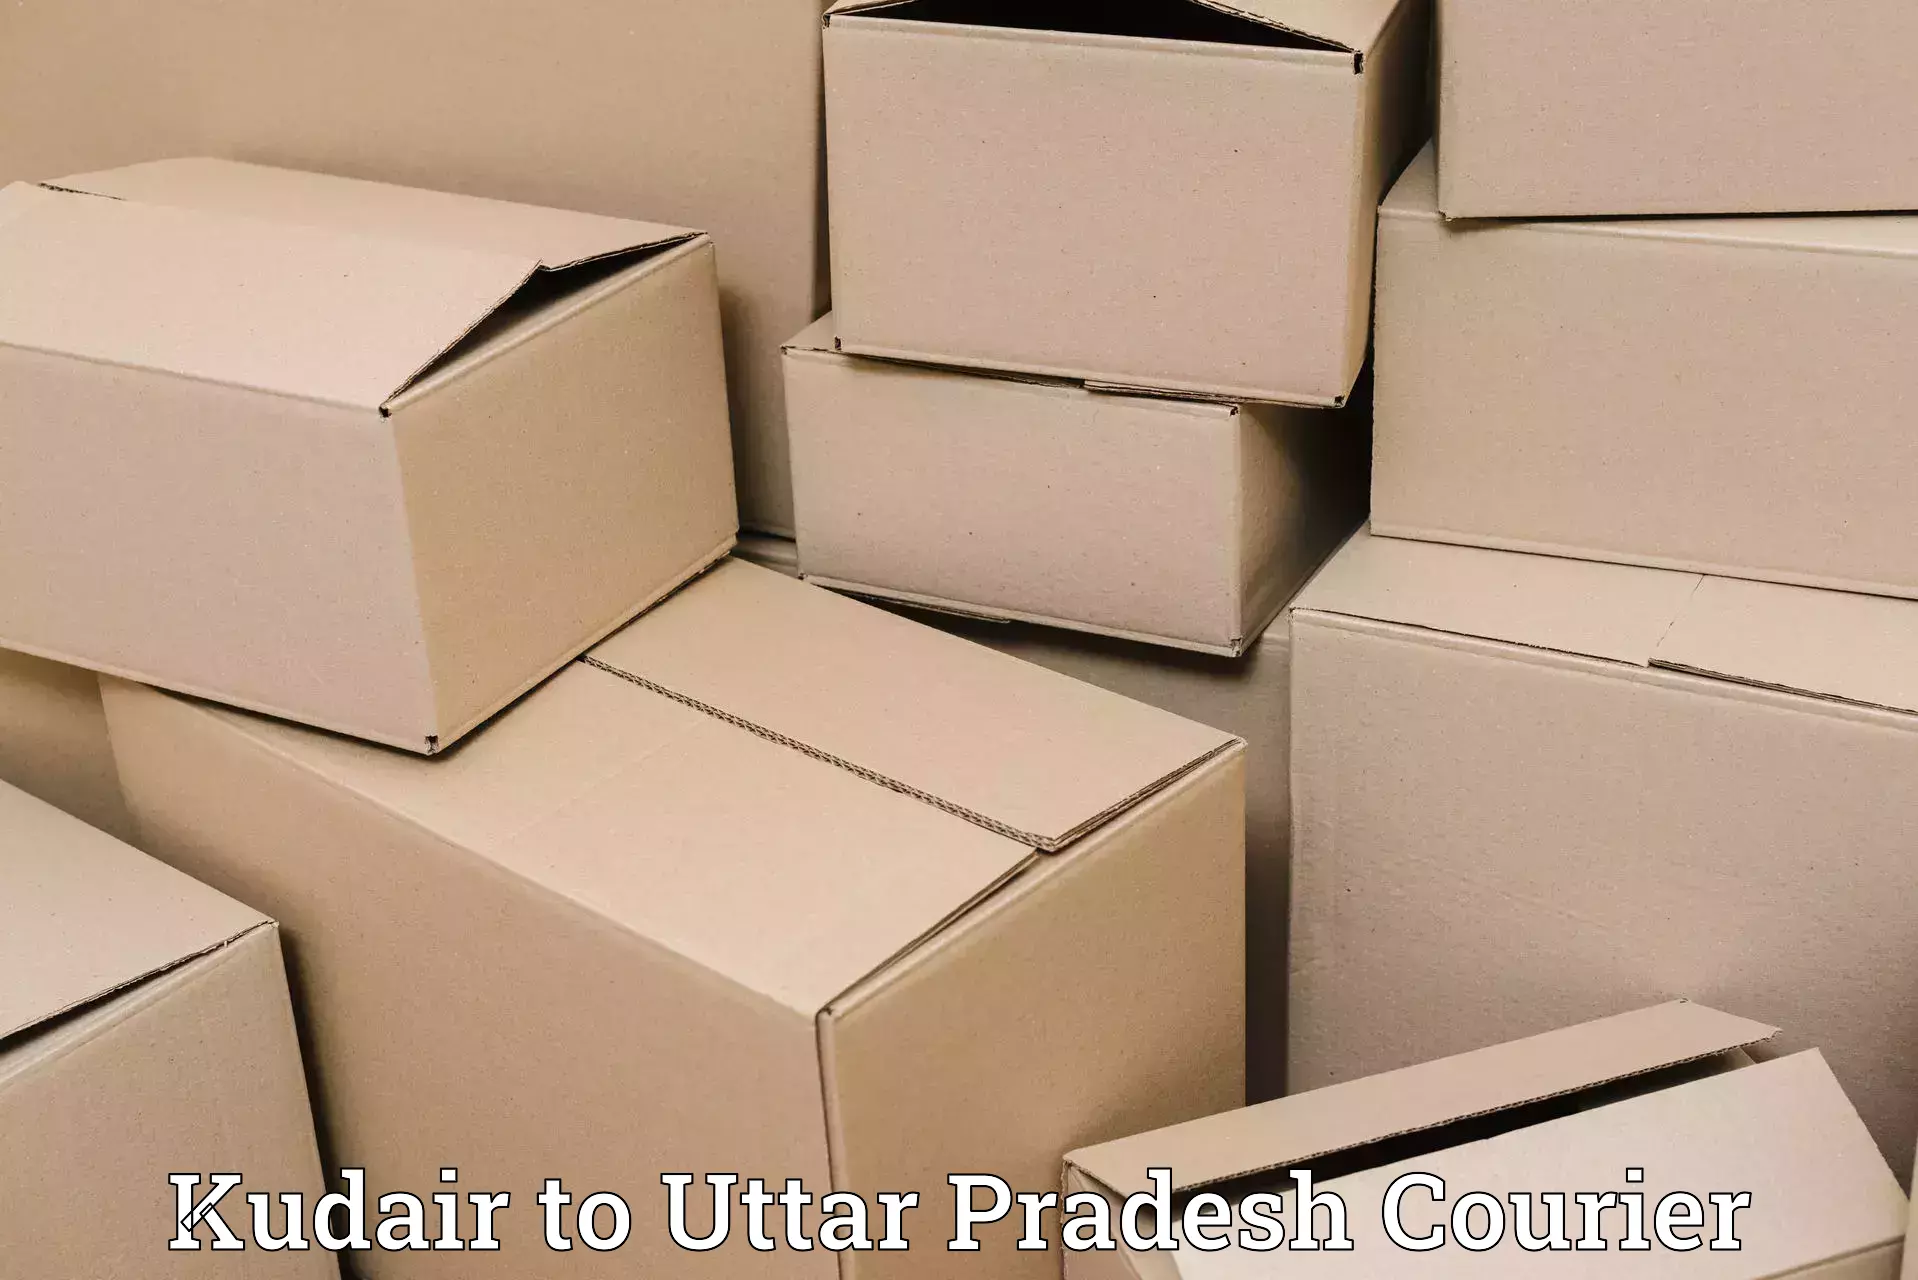 Reliable courier service Kudair to Aligarh Muslim University